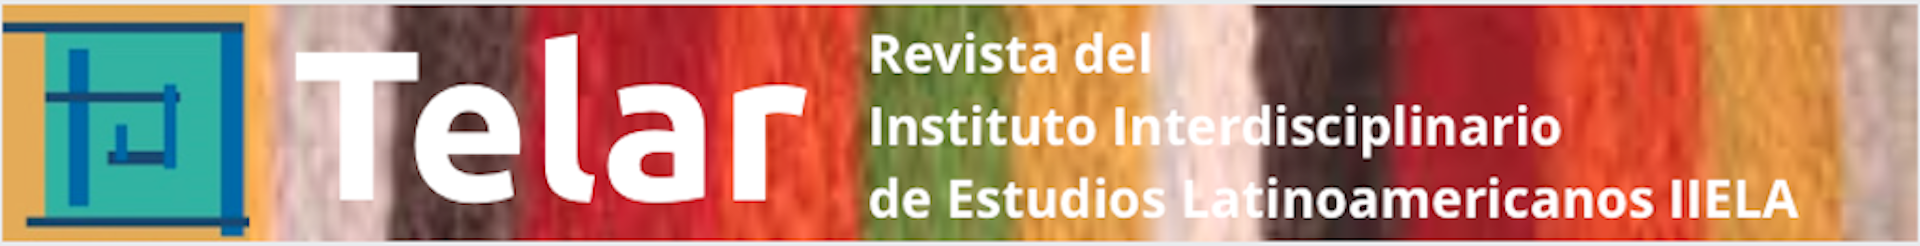 Revista Telar del Instituto Interdisciplinario de Estudios Latinoamericanos IIELA - FFyL-UNT